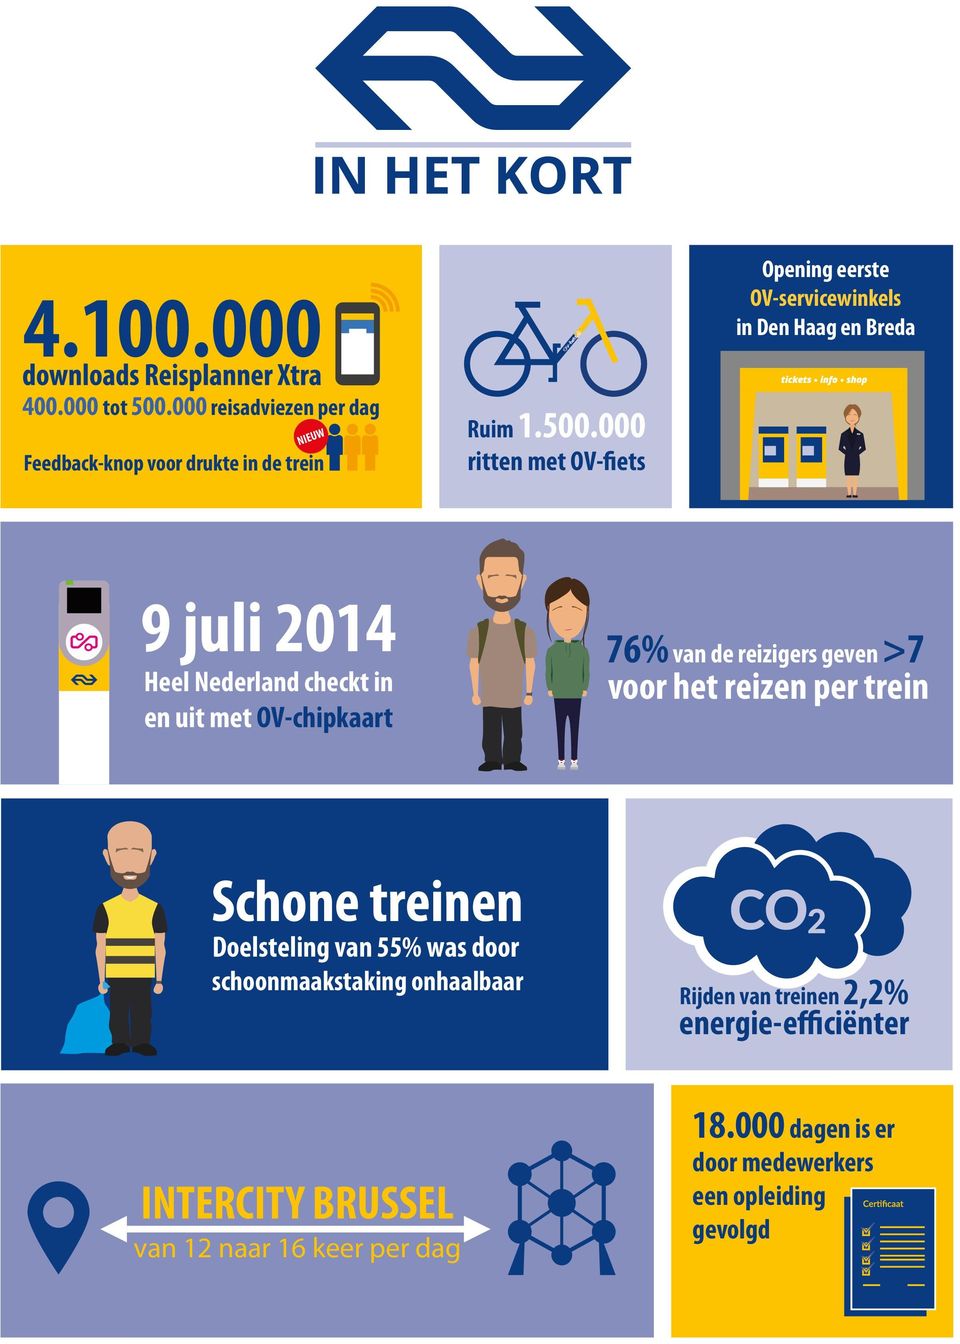 000 ritten met OV-fiets 9 juli 2014 Heel Nederland checkt in en uit met OV-chipkaart 76% van de reizigers geven >7 voor het reizen